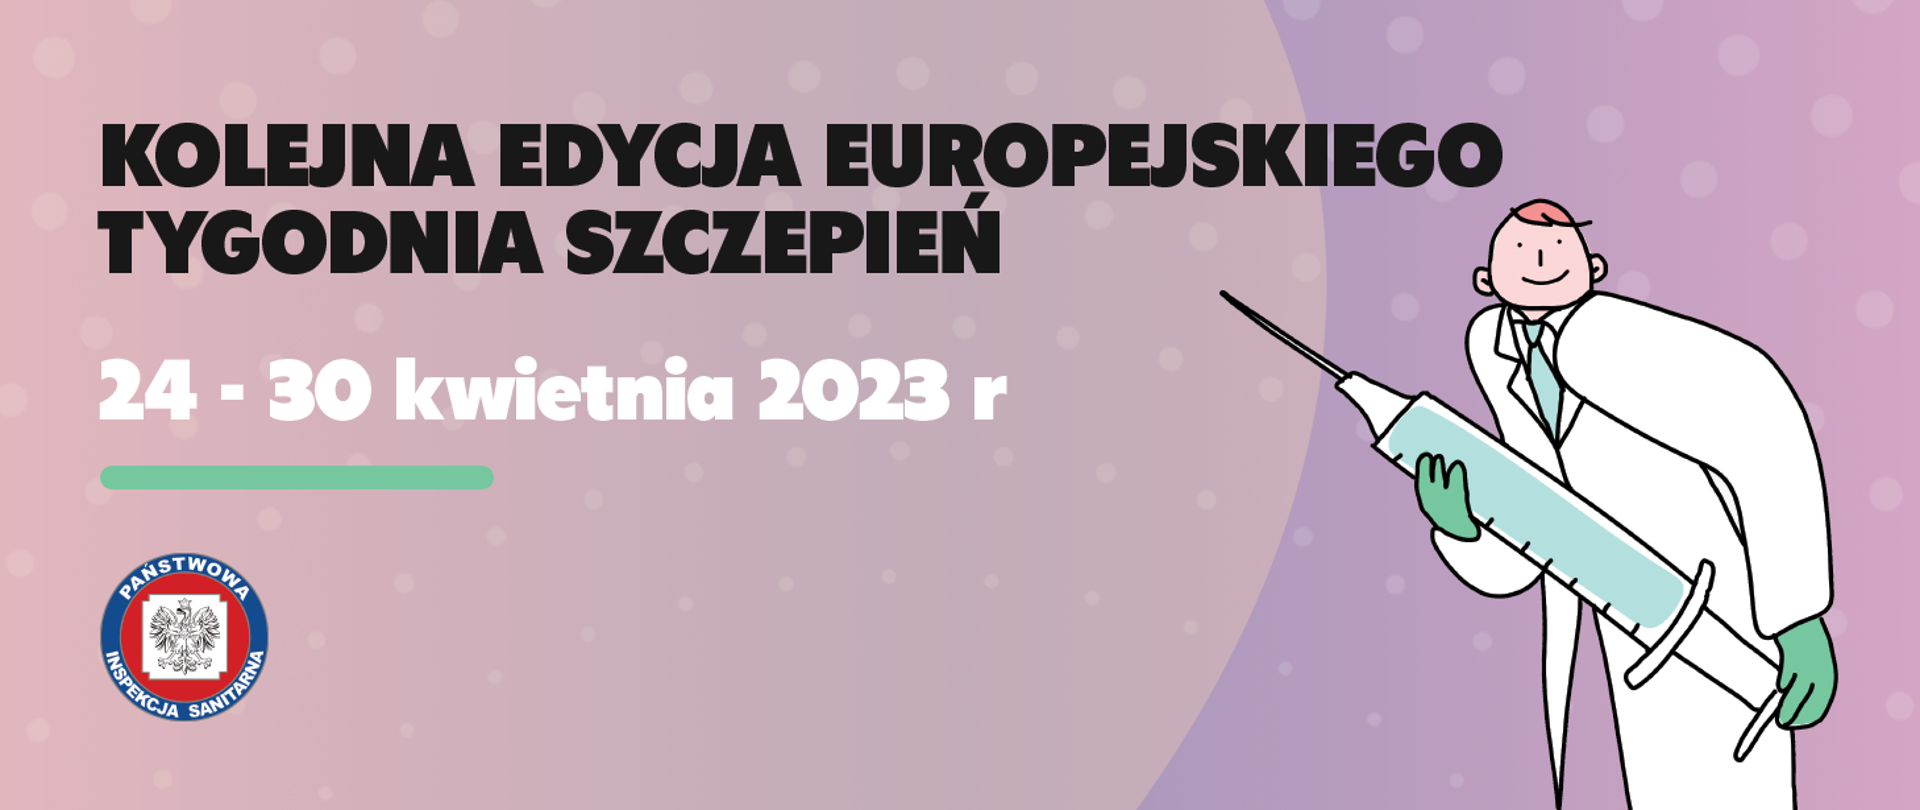 Baner Europejski Tydzień Szczepień ilustracja lekarze ze strzykawką